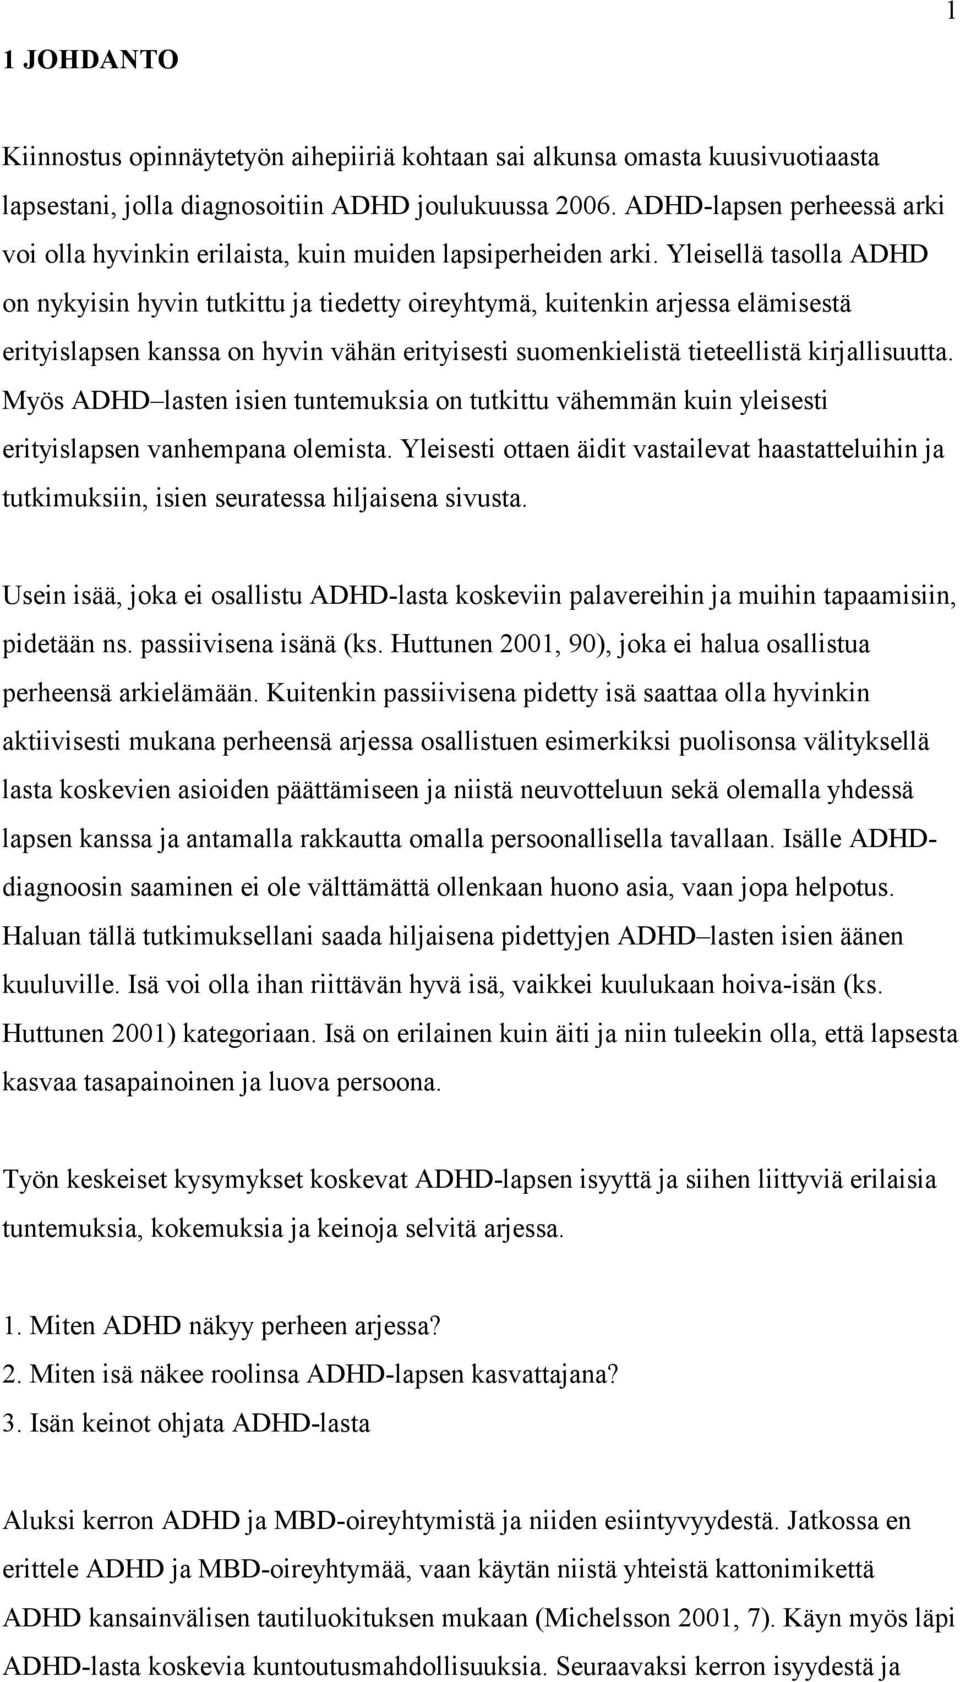 Yleisellä tasolla ADHD on nykyisin hyvin tutkittu ja tiedetty oireyhtymä, kuitenkin arjessa elämisestä erityislapsen kanssa on hyvin vähän erityisesti suomenkielistä tieteellistä kirjallisuutta.